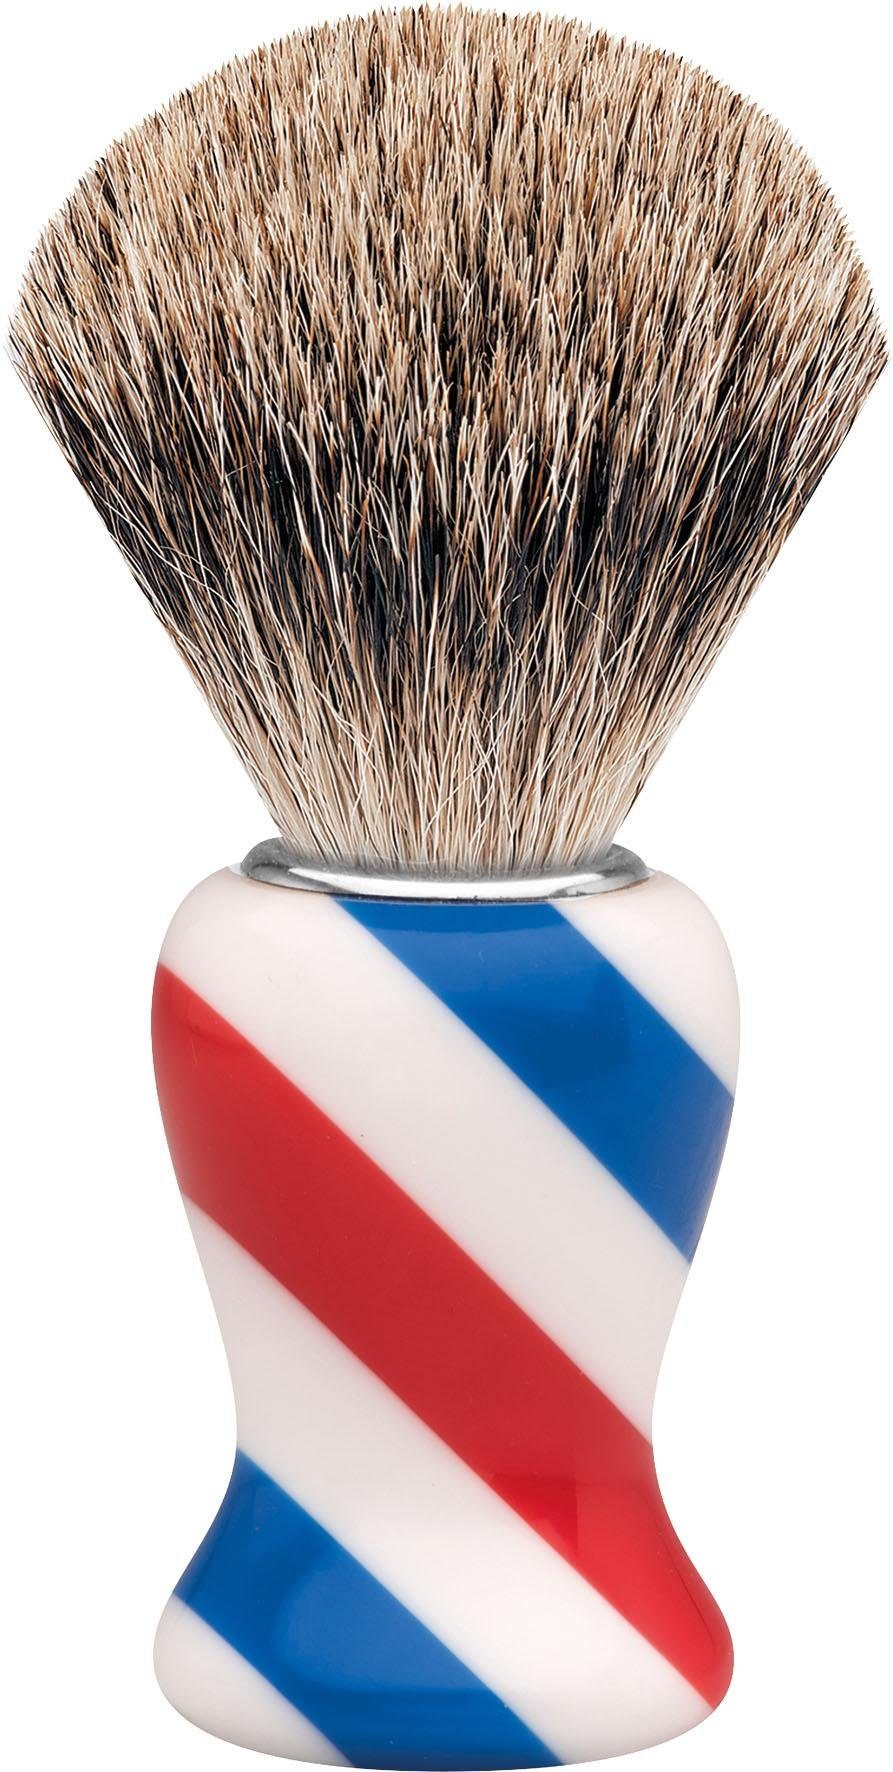 Rasierpinsel Barbershop Design/Stripes Dachshaar, M, ERBE